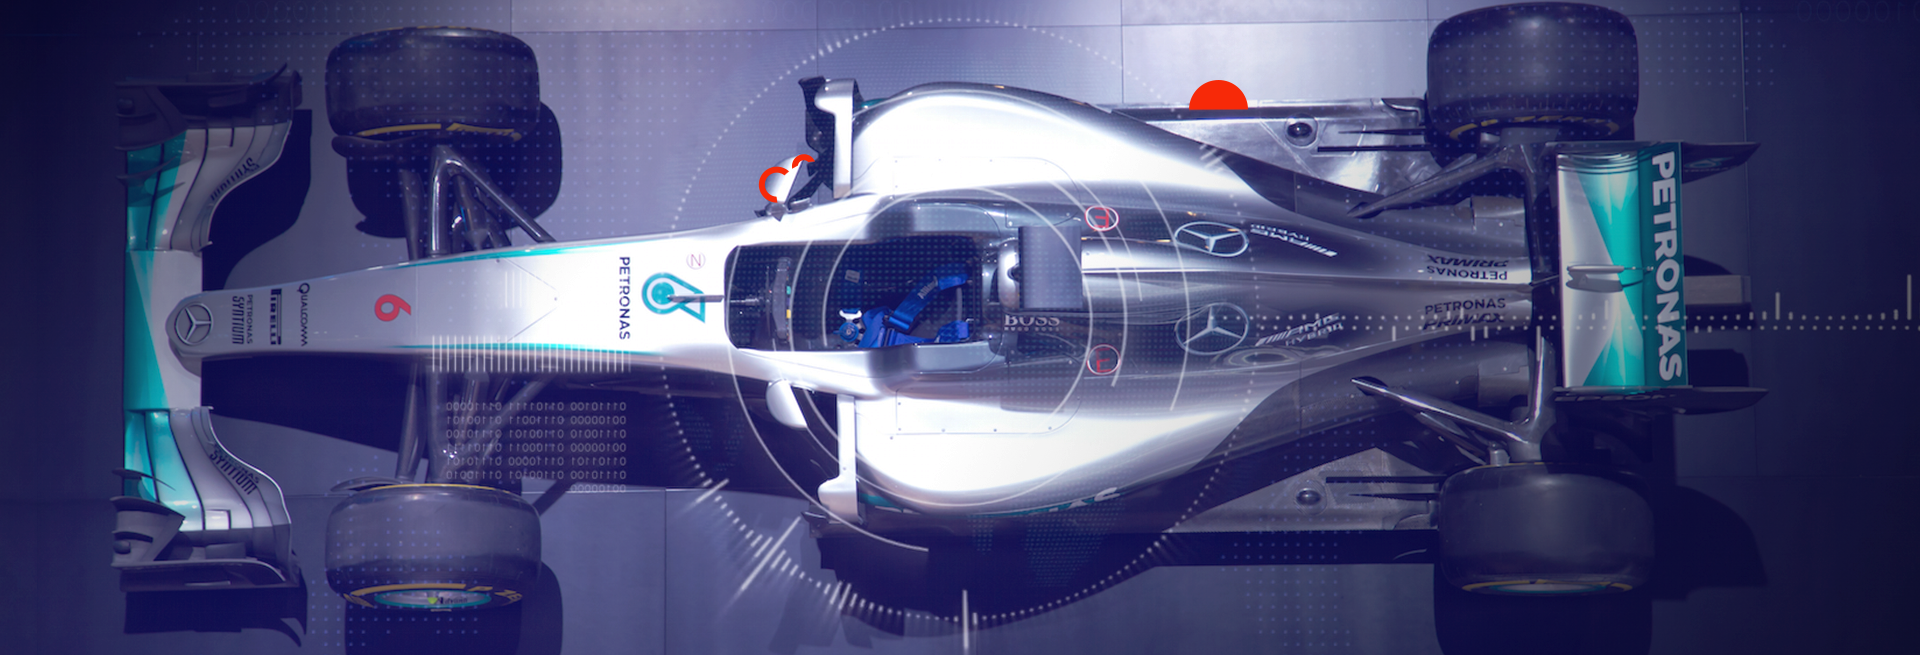 Você sabia que muitas das tecnologias automotivas do seu carro tiveram origem nas pistas da Fórmula 1? Descubra quais em nosso blog.